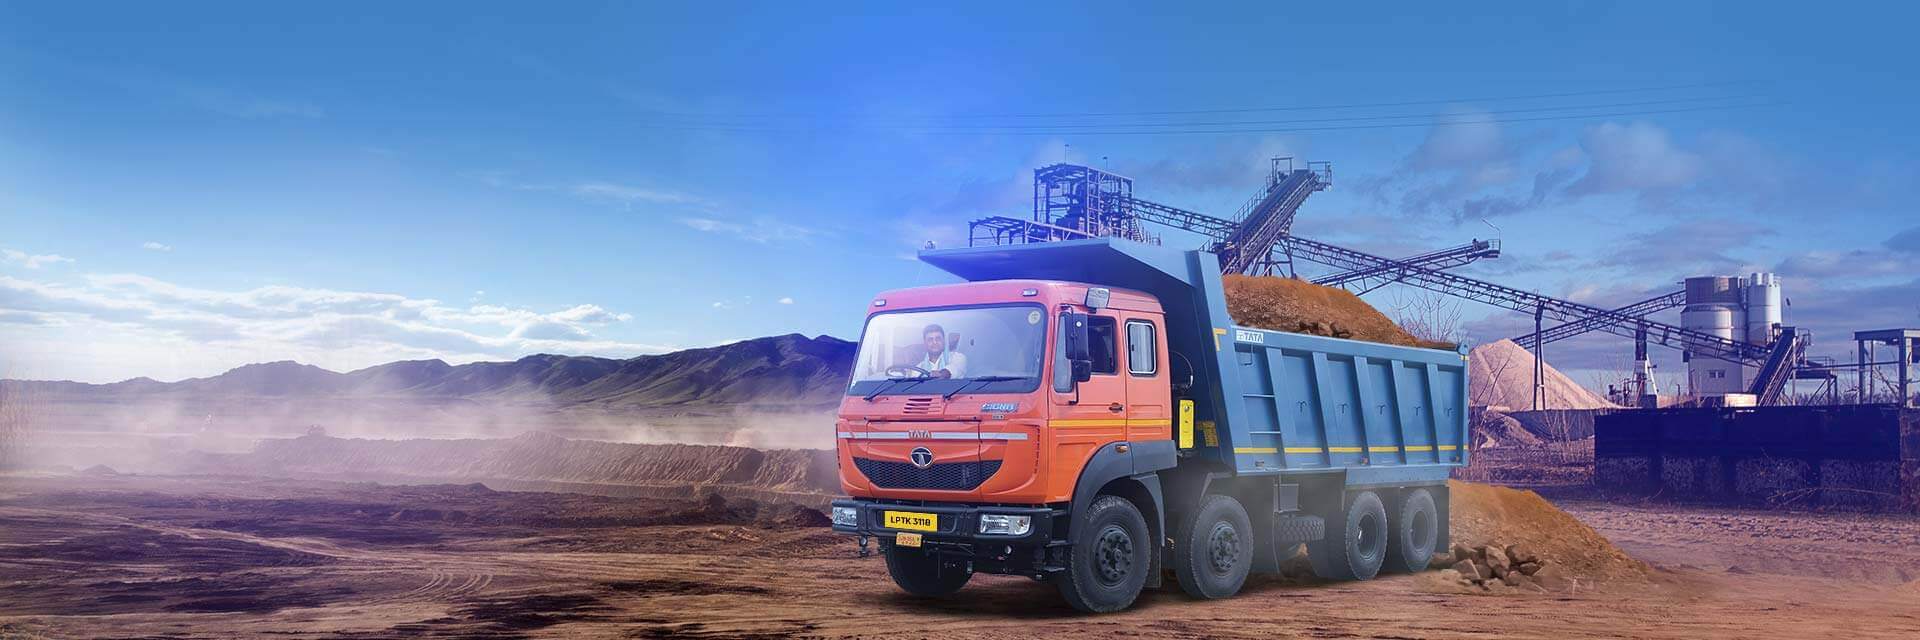 Tata LPTK 3118 Trucks LH Side